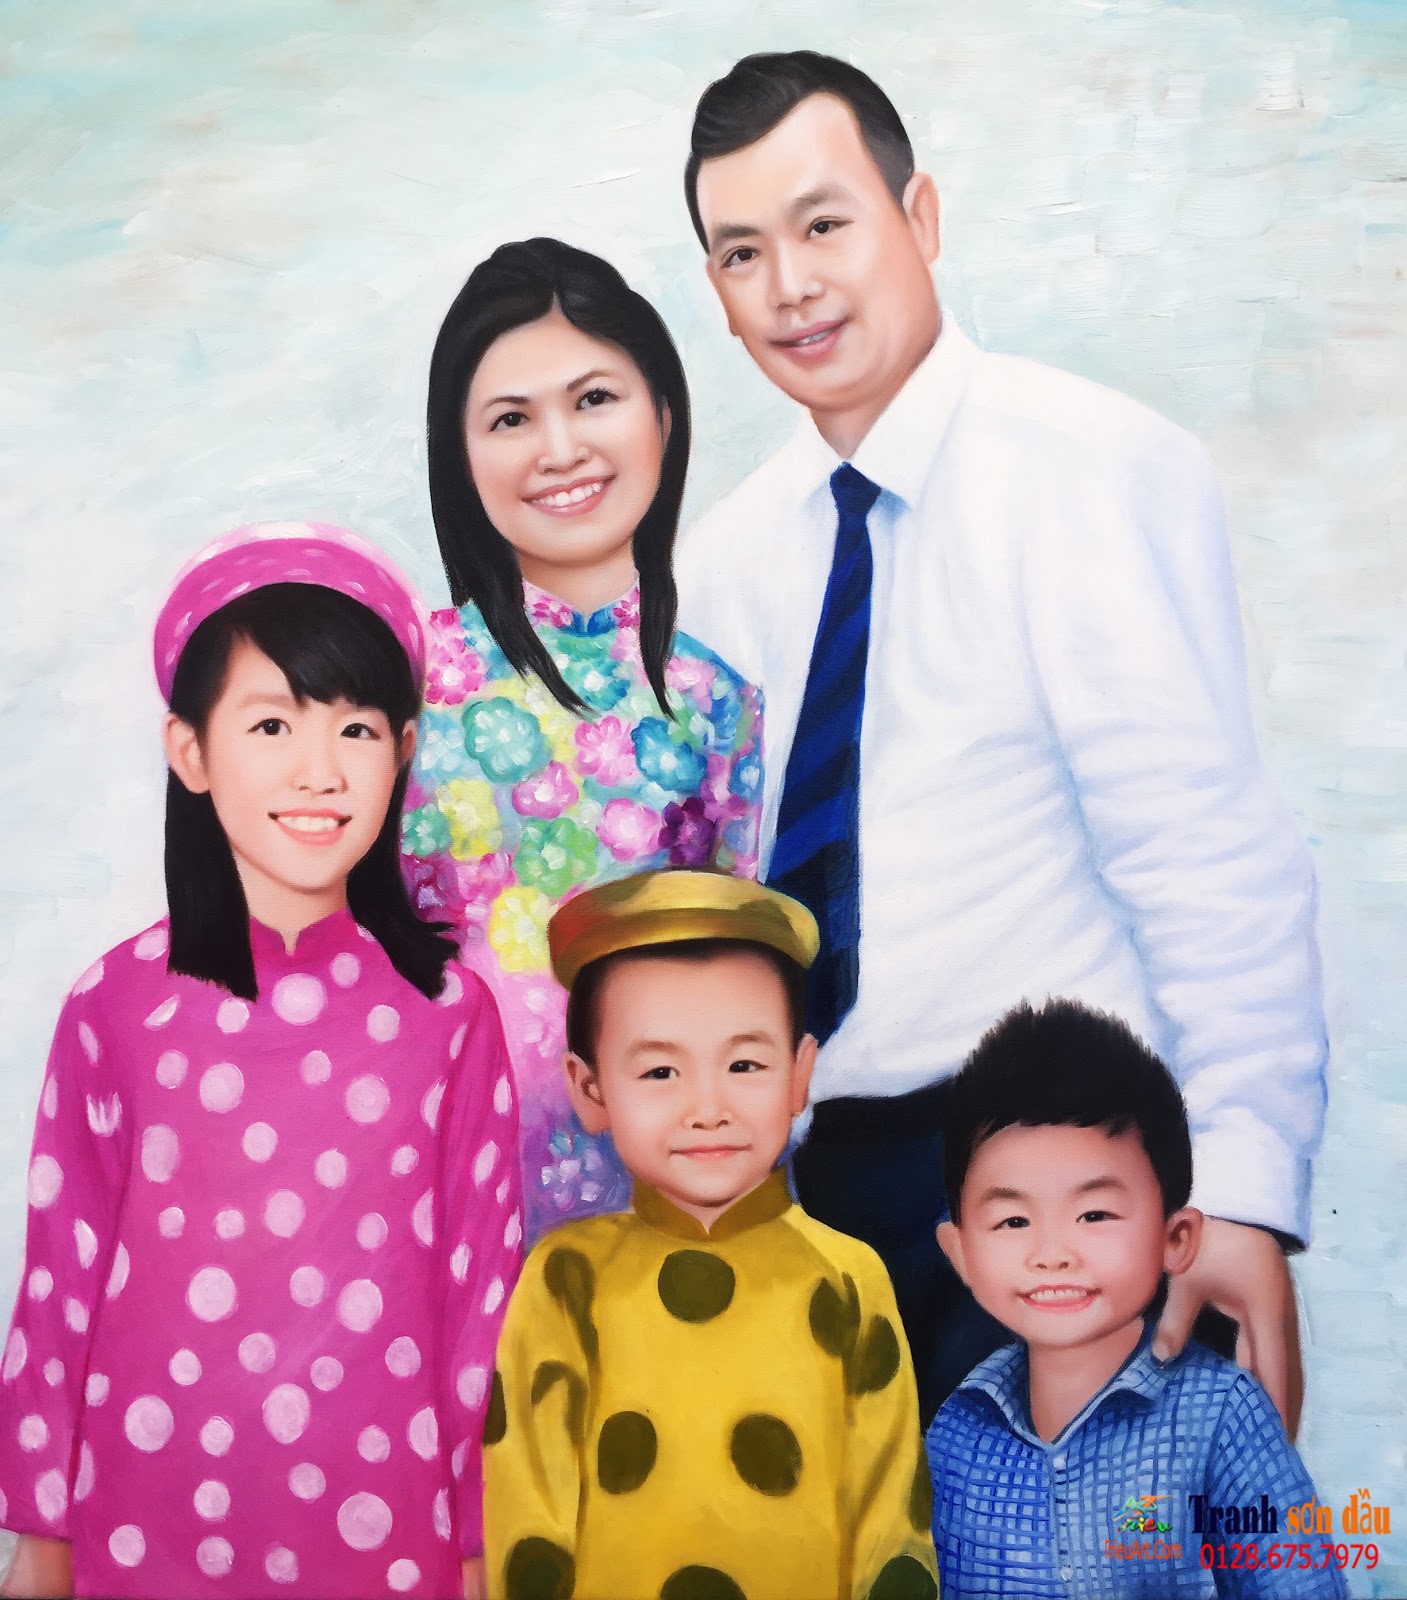 vẽ chân dung gia đình theo yêu cầu - Tranh sơn dầu giá rẻ✔️- Tranh sơn dầu  chất lượng✔️-Tranh son dau✔️